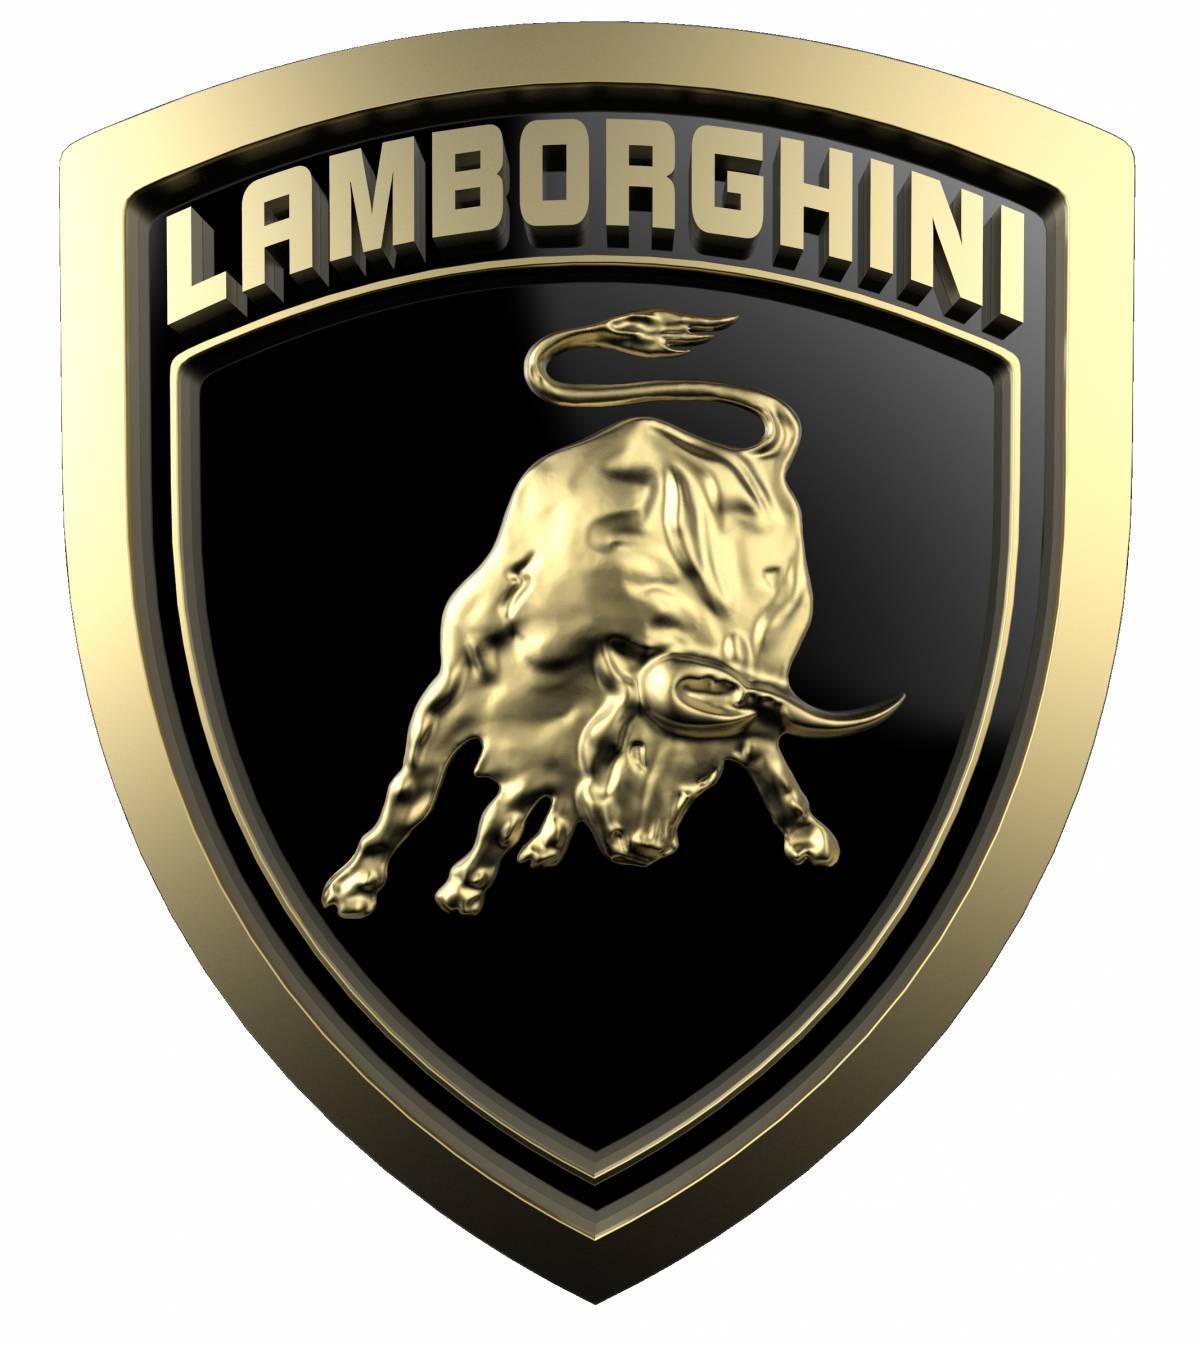 Ламба значок. Значок Ламборджини. Марка Lamborghini. Фирменный знак Ламборджини. Марка Ламборджини значок.